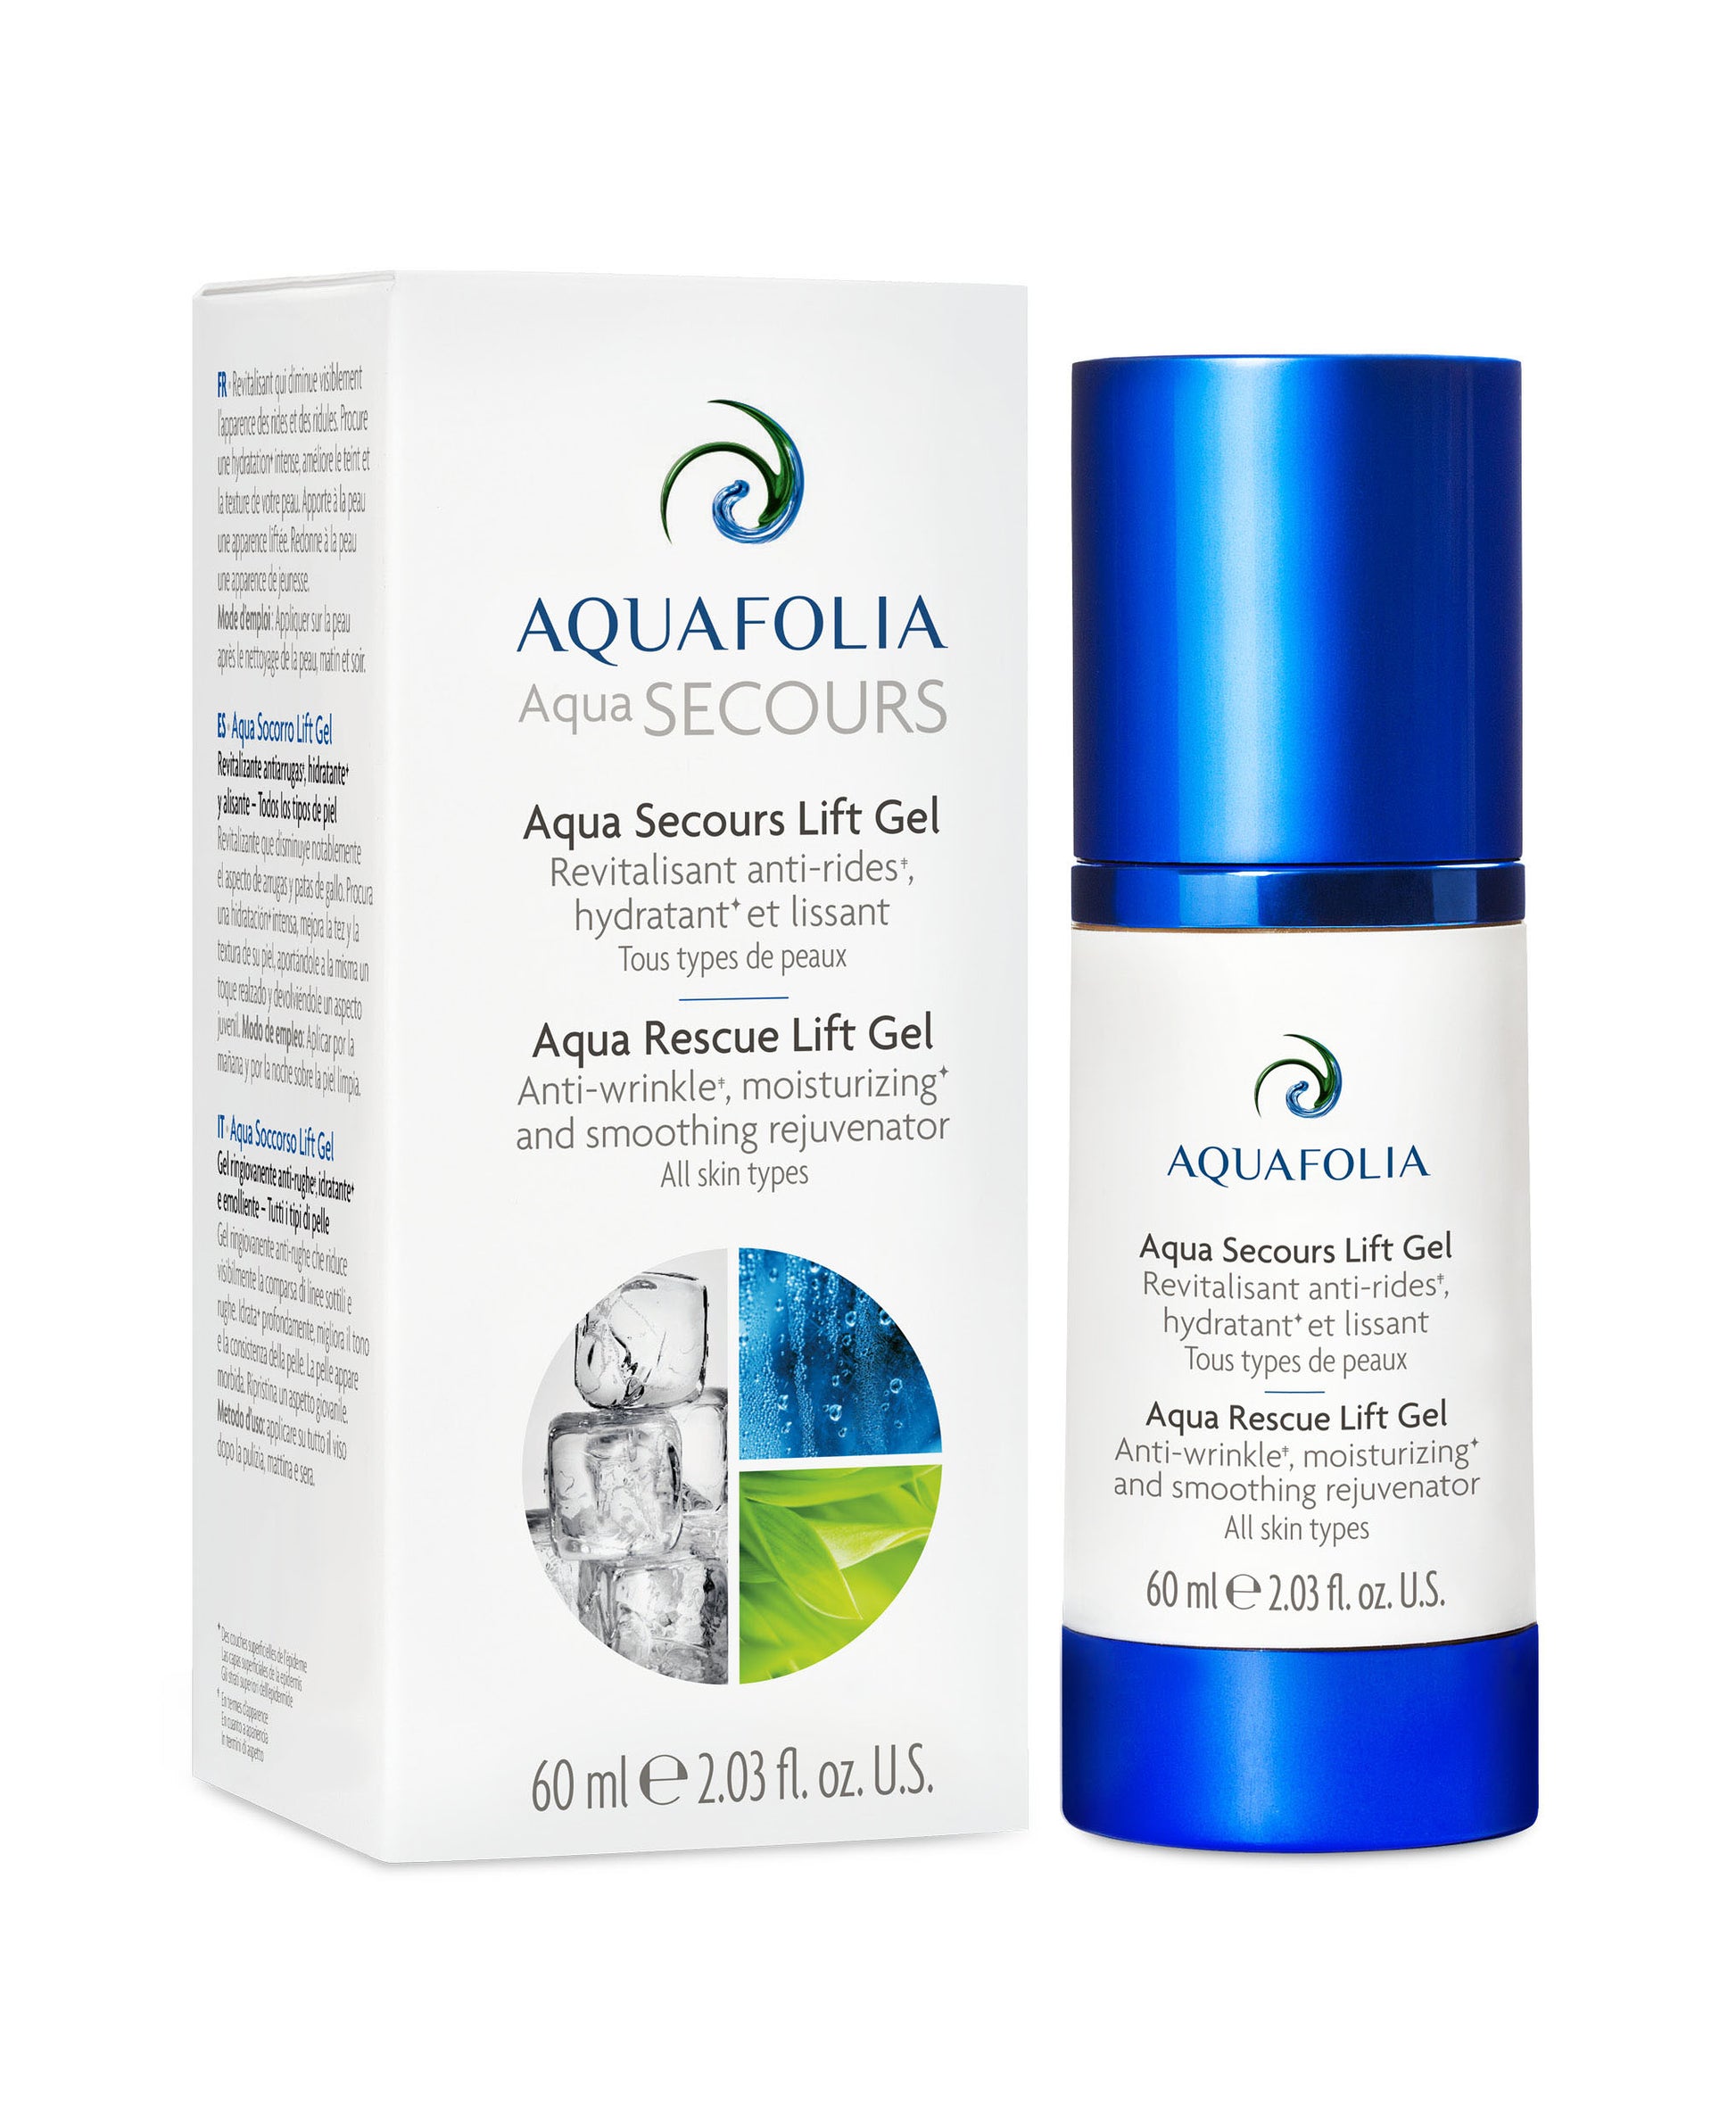 Aquafolia aqua rescue gel, anti-wrinkle moisturizing and smoothing rejuvenator, lipid regeneration, dehydrated skin, Product image, box, bottle, white background